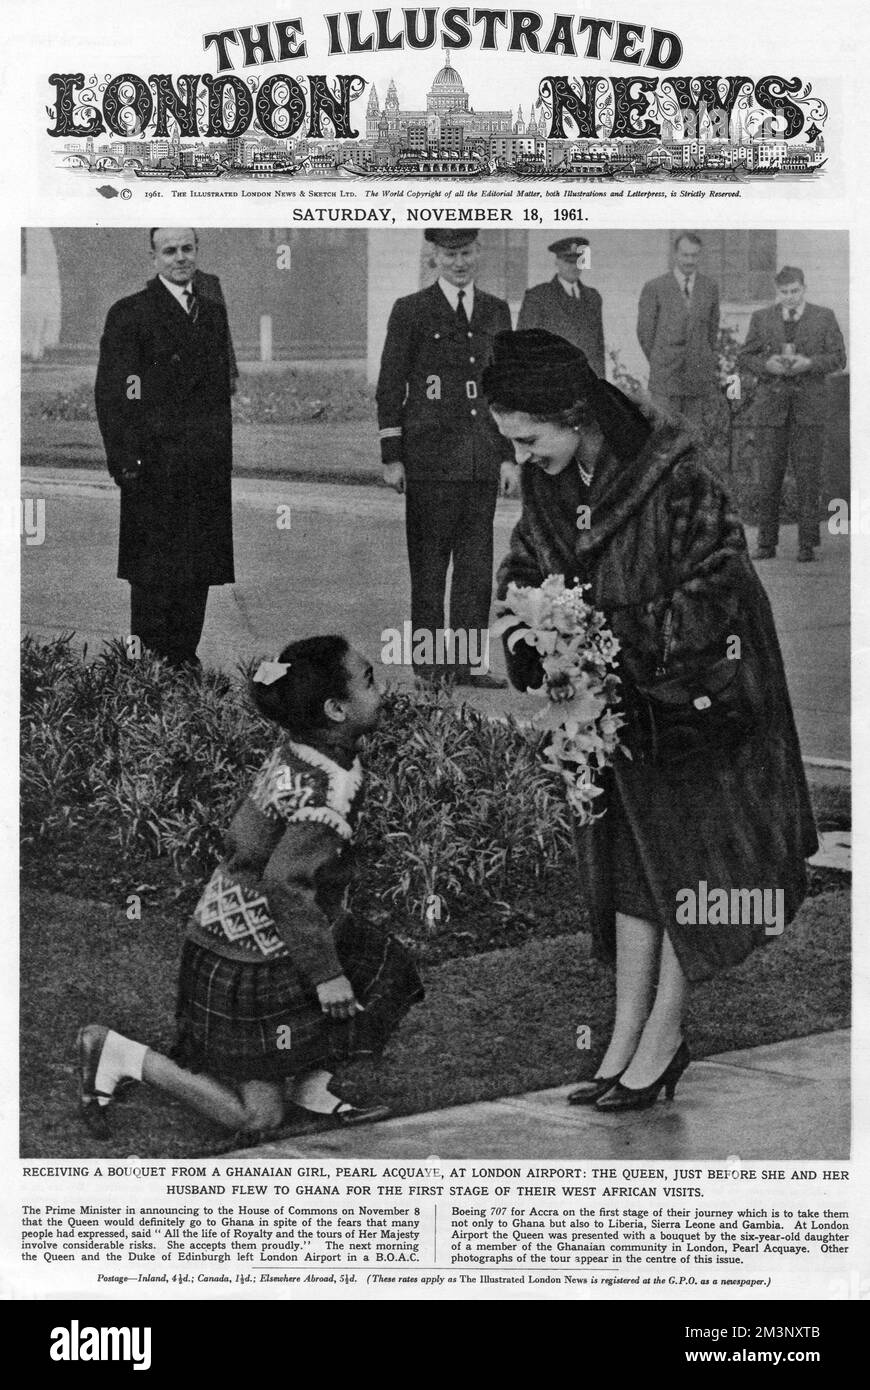 Die Königin erhält einen Blumenstrauß von einem ghanaischen Mädchen, Pearl Acquaye, am Londoner Flughafen, kurz bevor die Königin und der Herzog von Edinburgh nach Ghana geflogen sind, um die erste Phase ihrer westafrikanischen Besuche zu erleben. Datum: 1961 Stockfoto